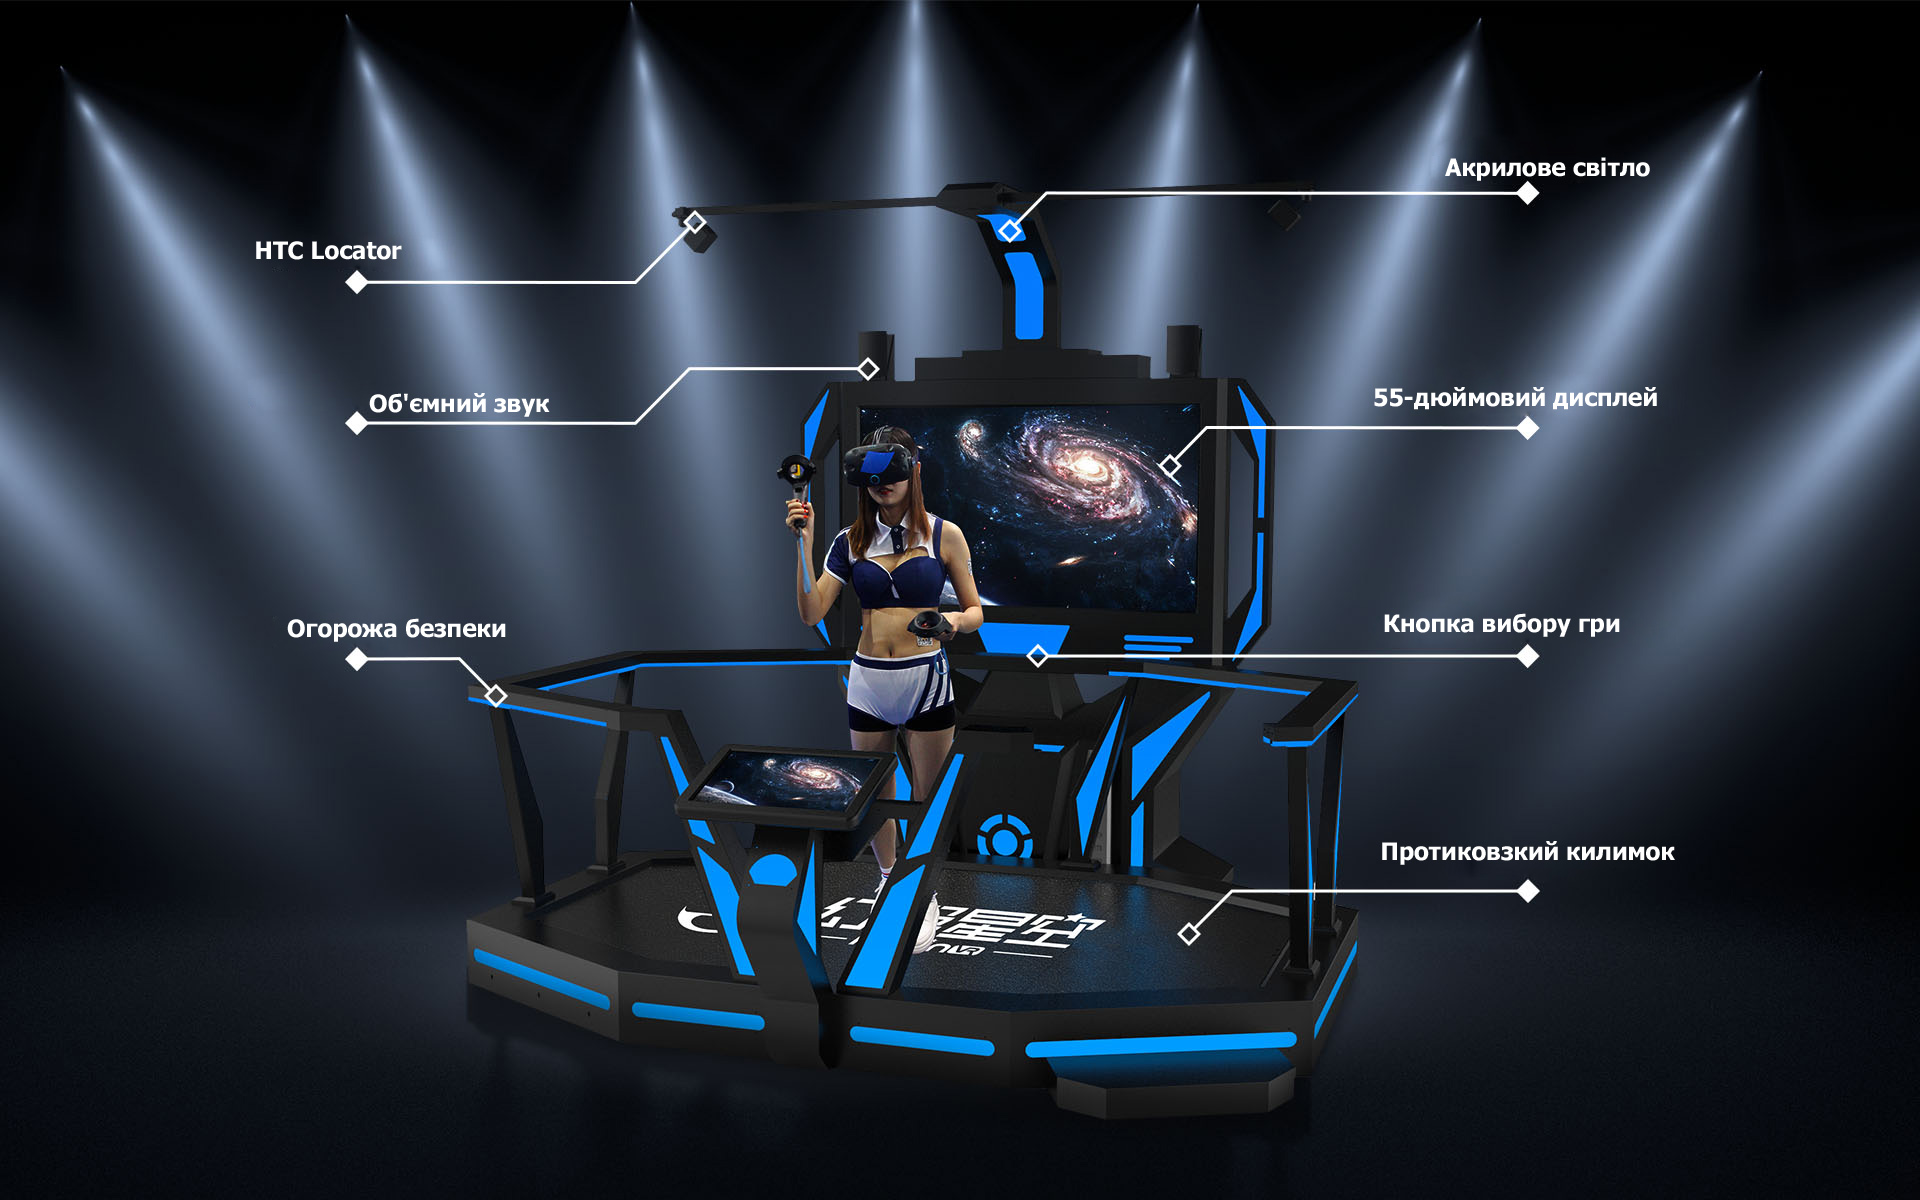 Ігровий автомат віртуальної реальності E-Space Walker